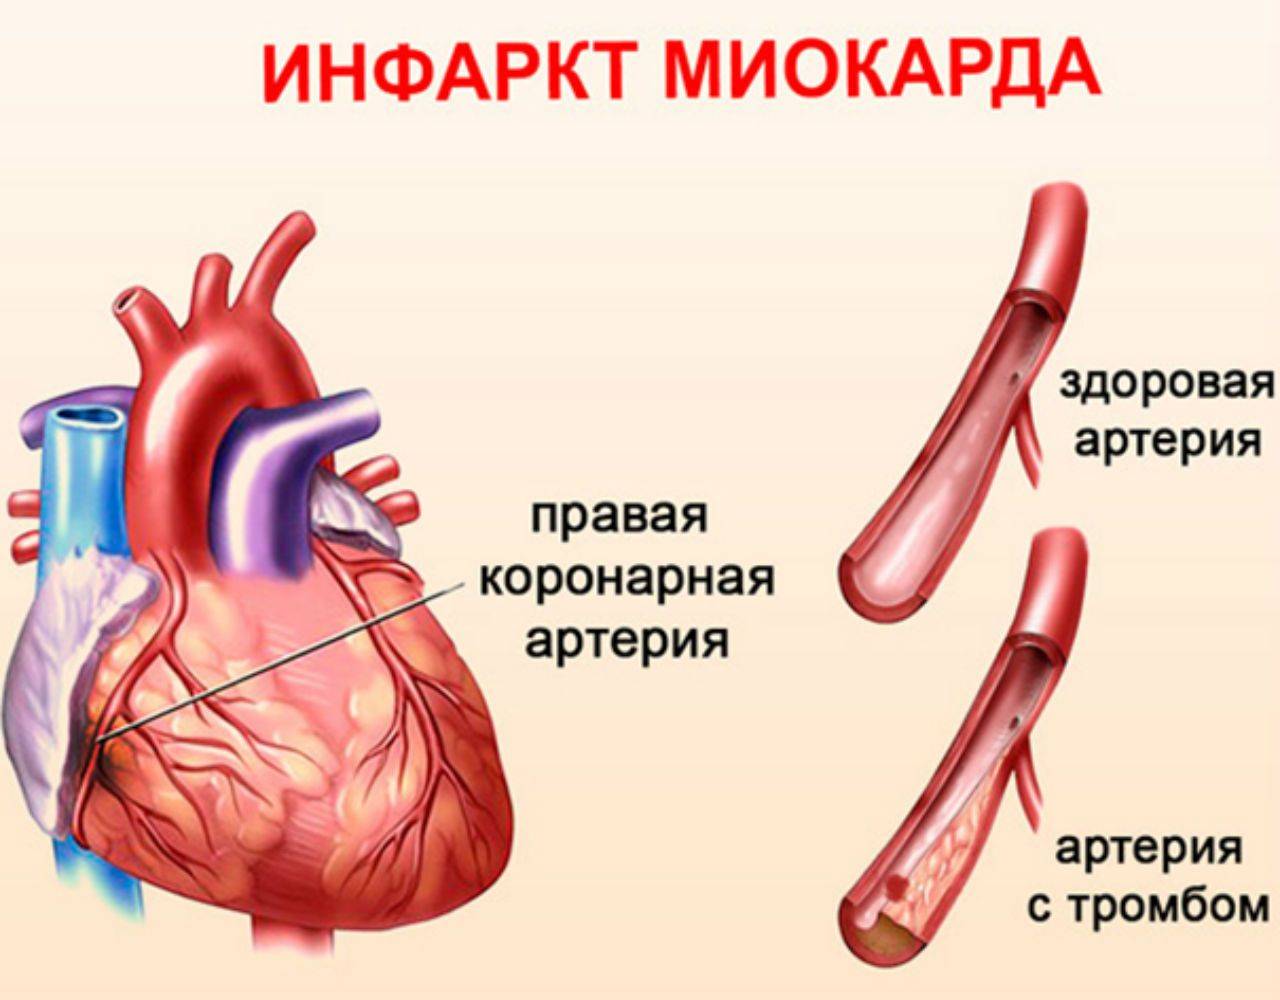 Аритмия и инфаркт: причины появления мерцательной аритмии при или после инфаркта, стенирования, купирование желудочковых